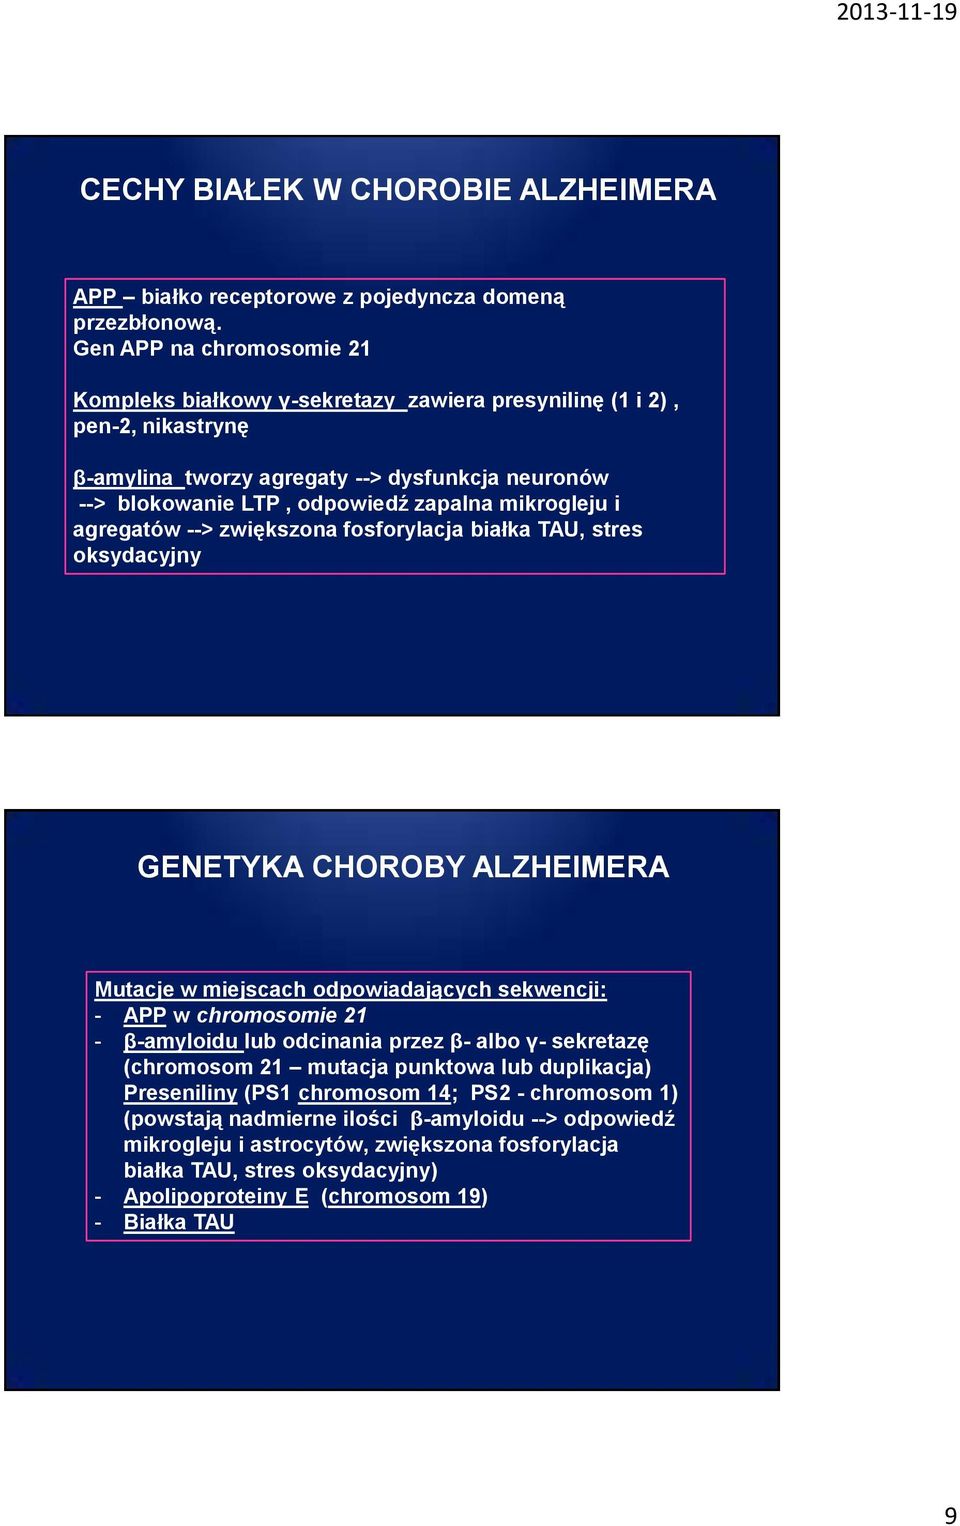 mikrogleju i agregatów --> zwiększona fosforylacja białka TAU, stres oksydacyjny GENETYKA CHOROBY ALZHEIMERA Mutacje w miejscach odpowiadających sekwencji: - APP w chromosomie 21 - β-amyloidu lub